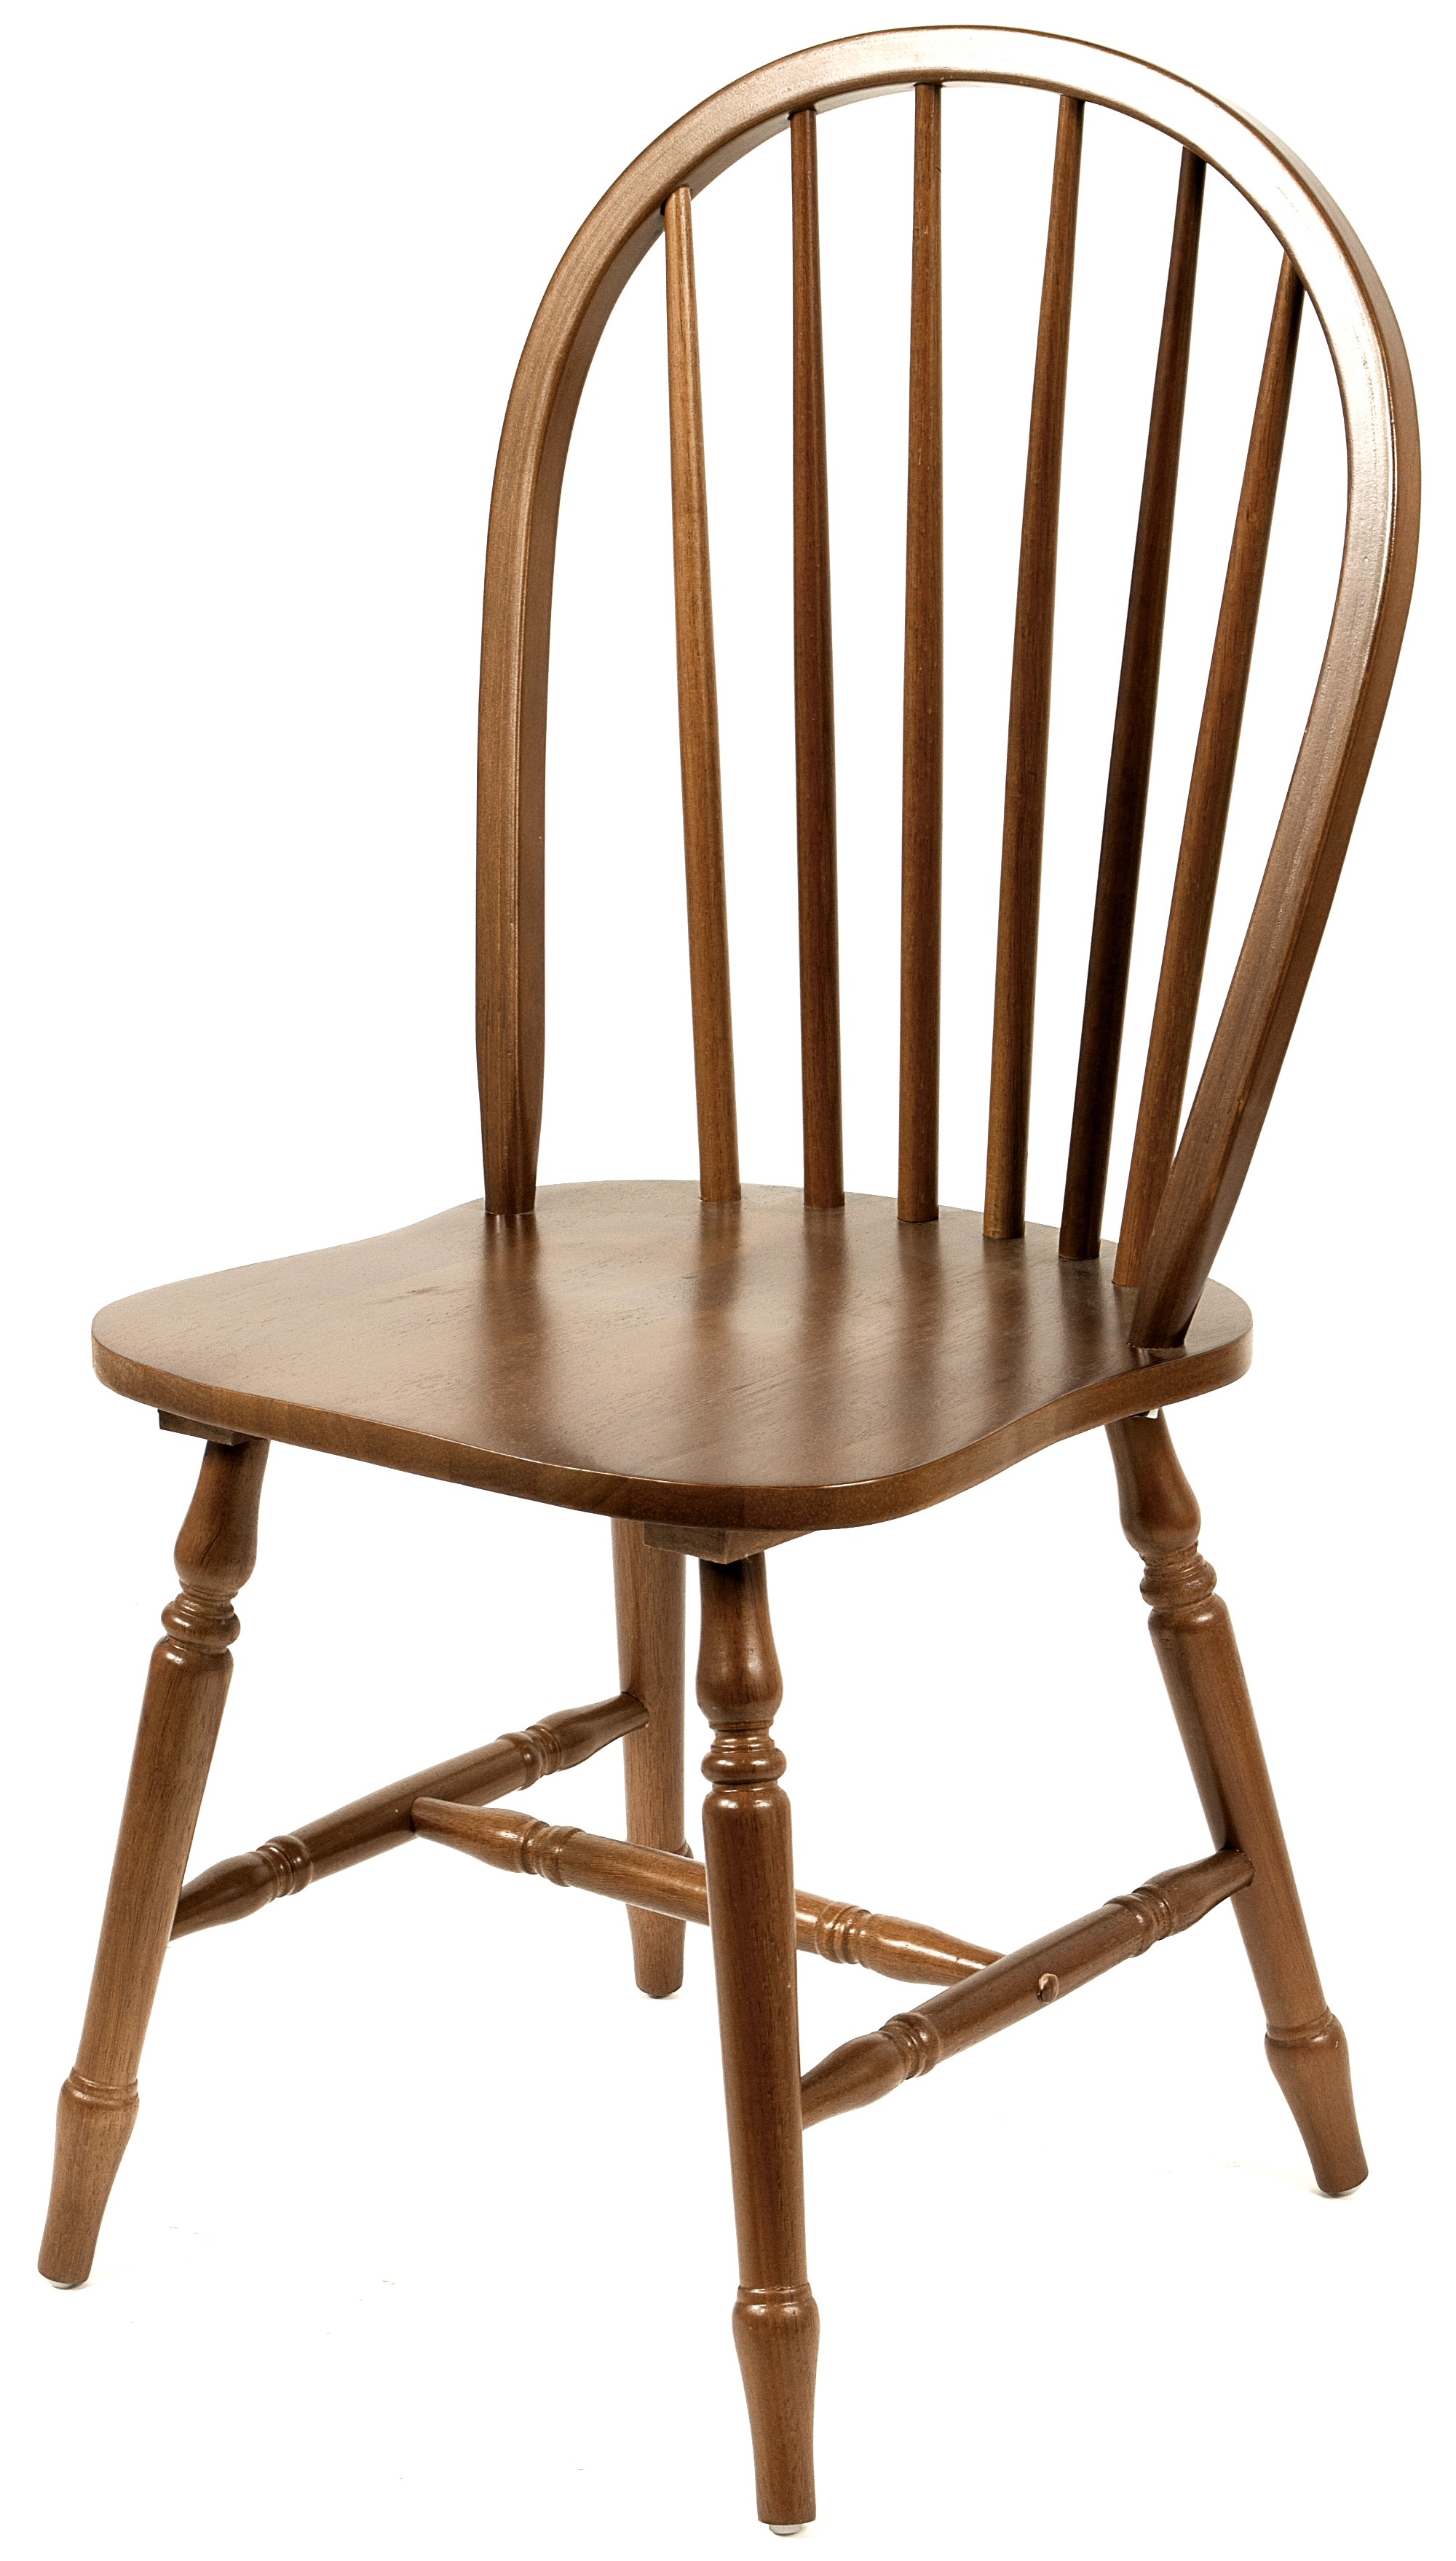 Estila Rustikální dřevená jídelní židle Felicita hnědé barvy se zaobleným opěradlem 88cm